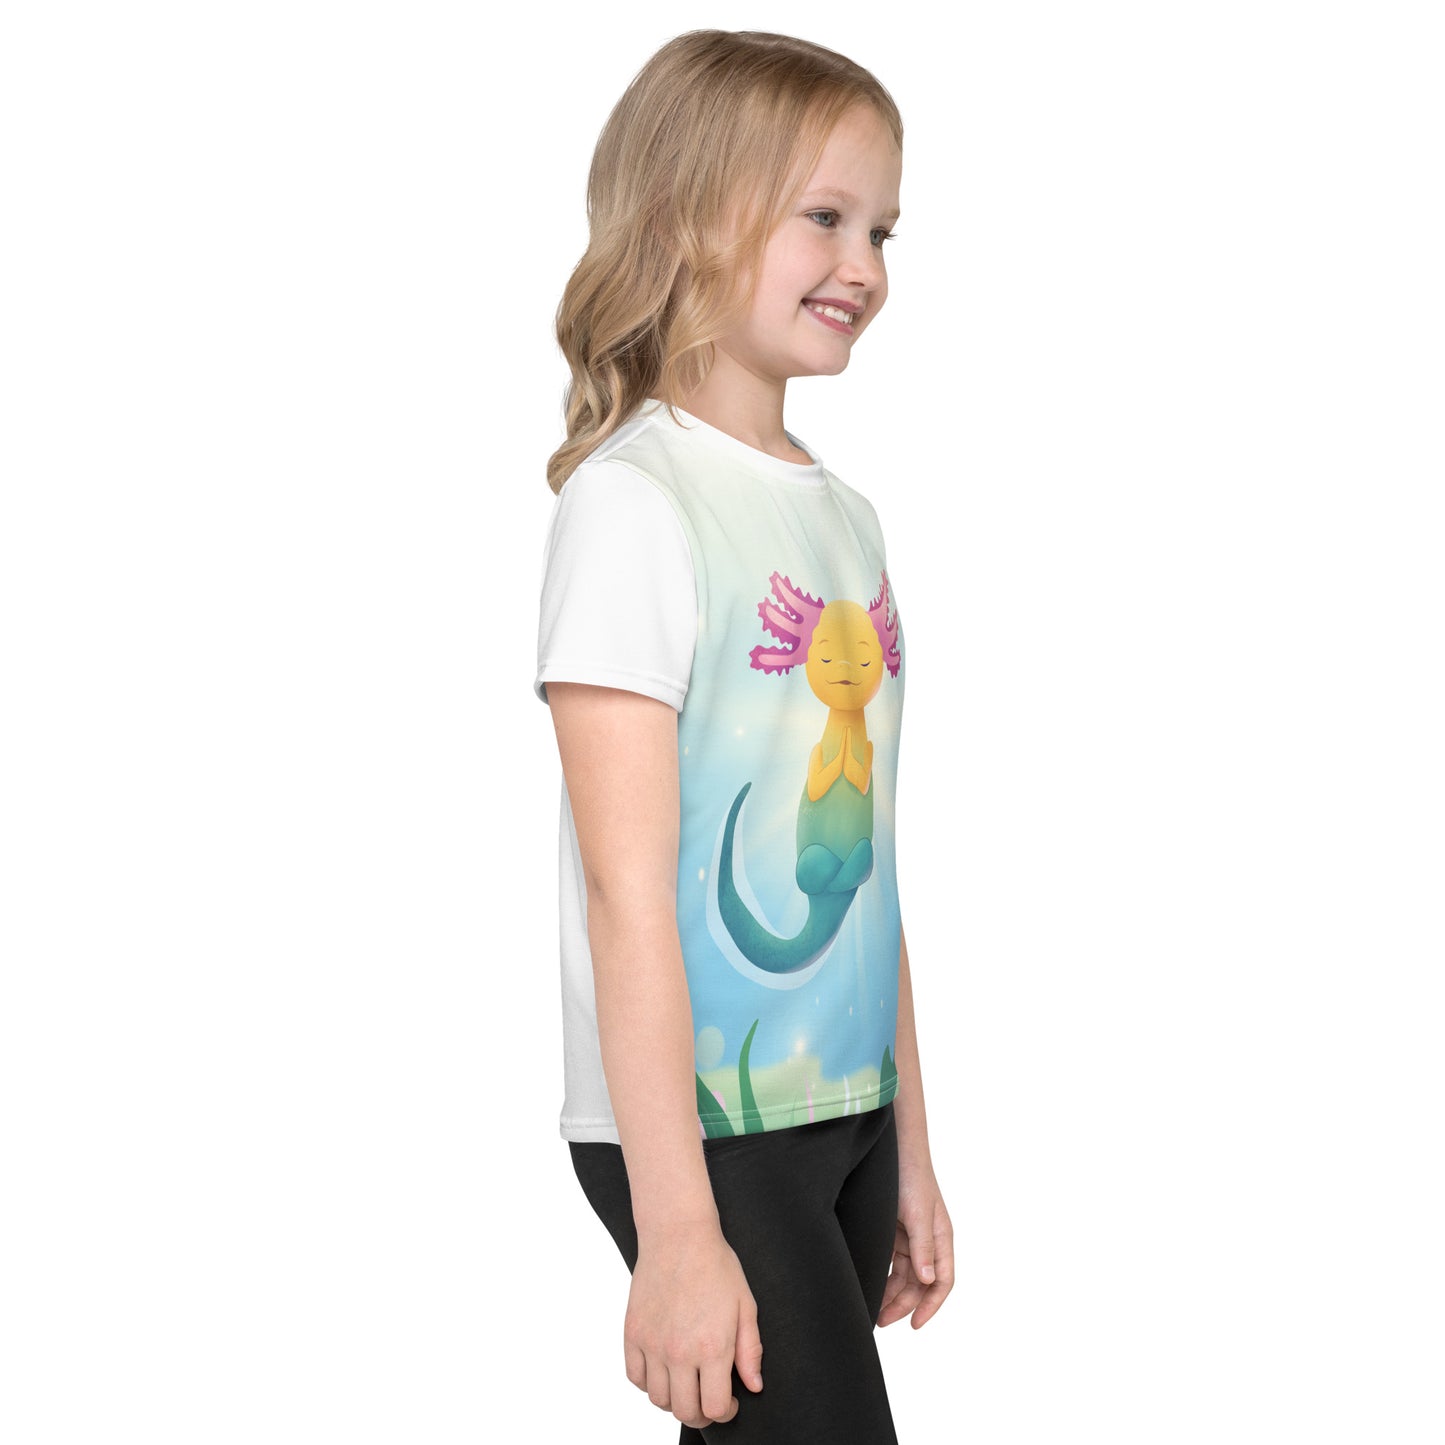 "Axis blir lugn" T-shirt för barn 2-8år, med helt tryck på framsidan samt rundad hals, vit rygg och ärm.